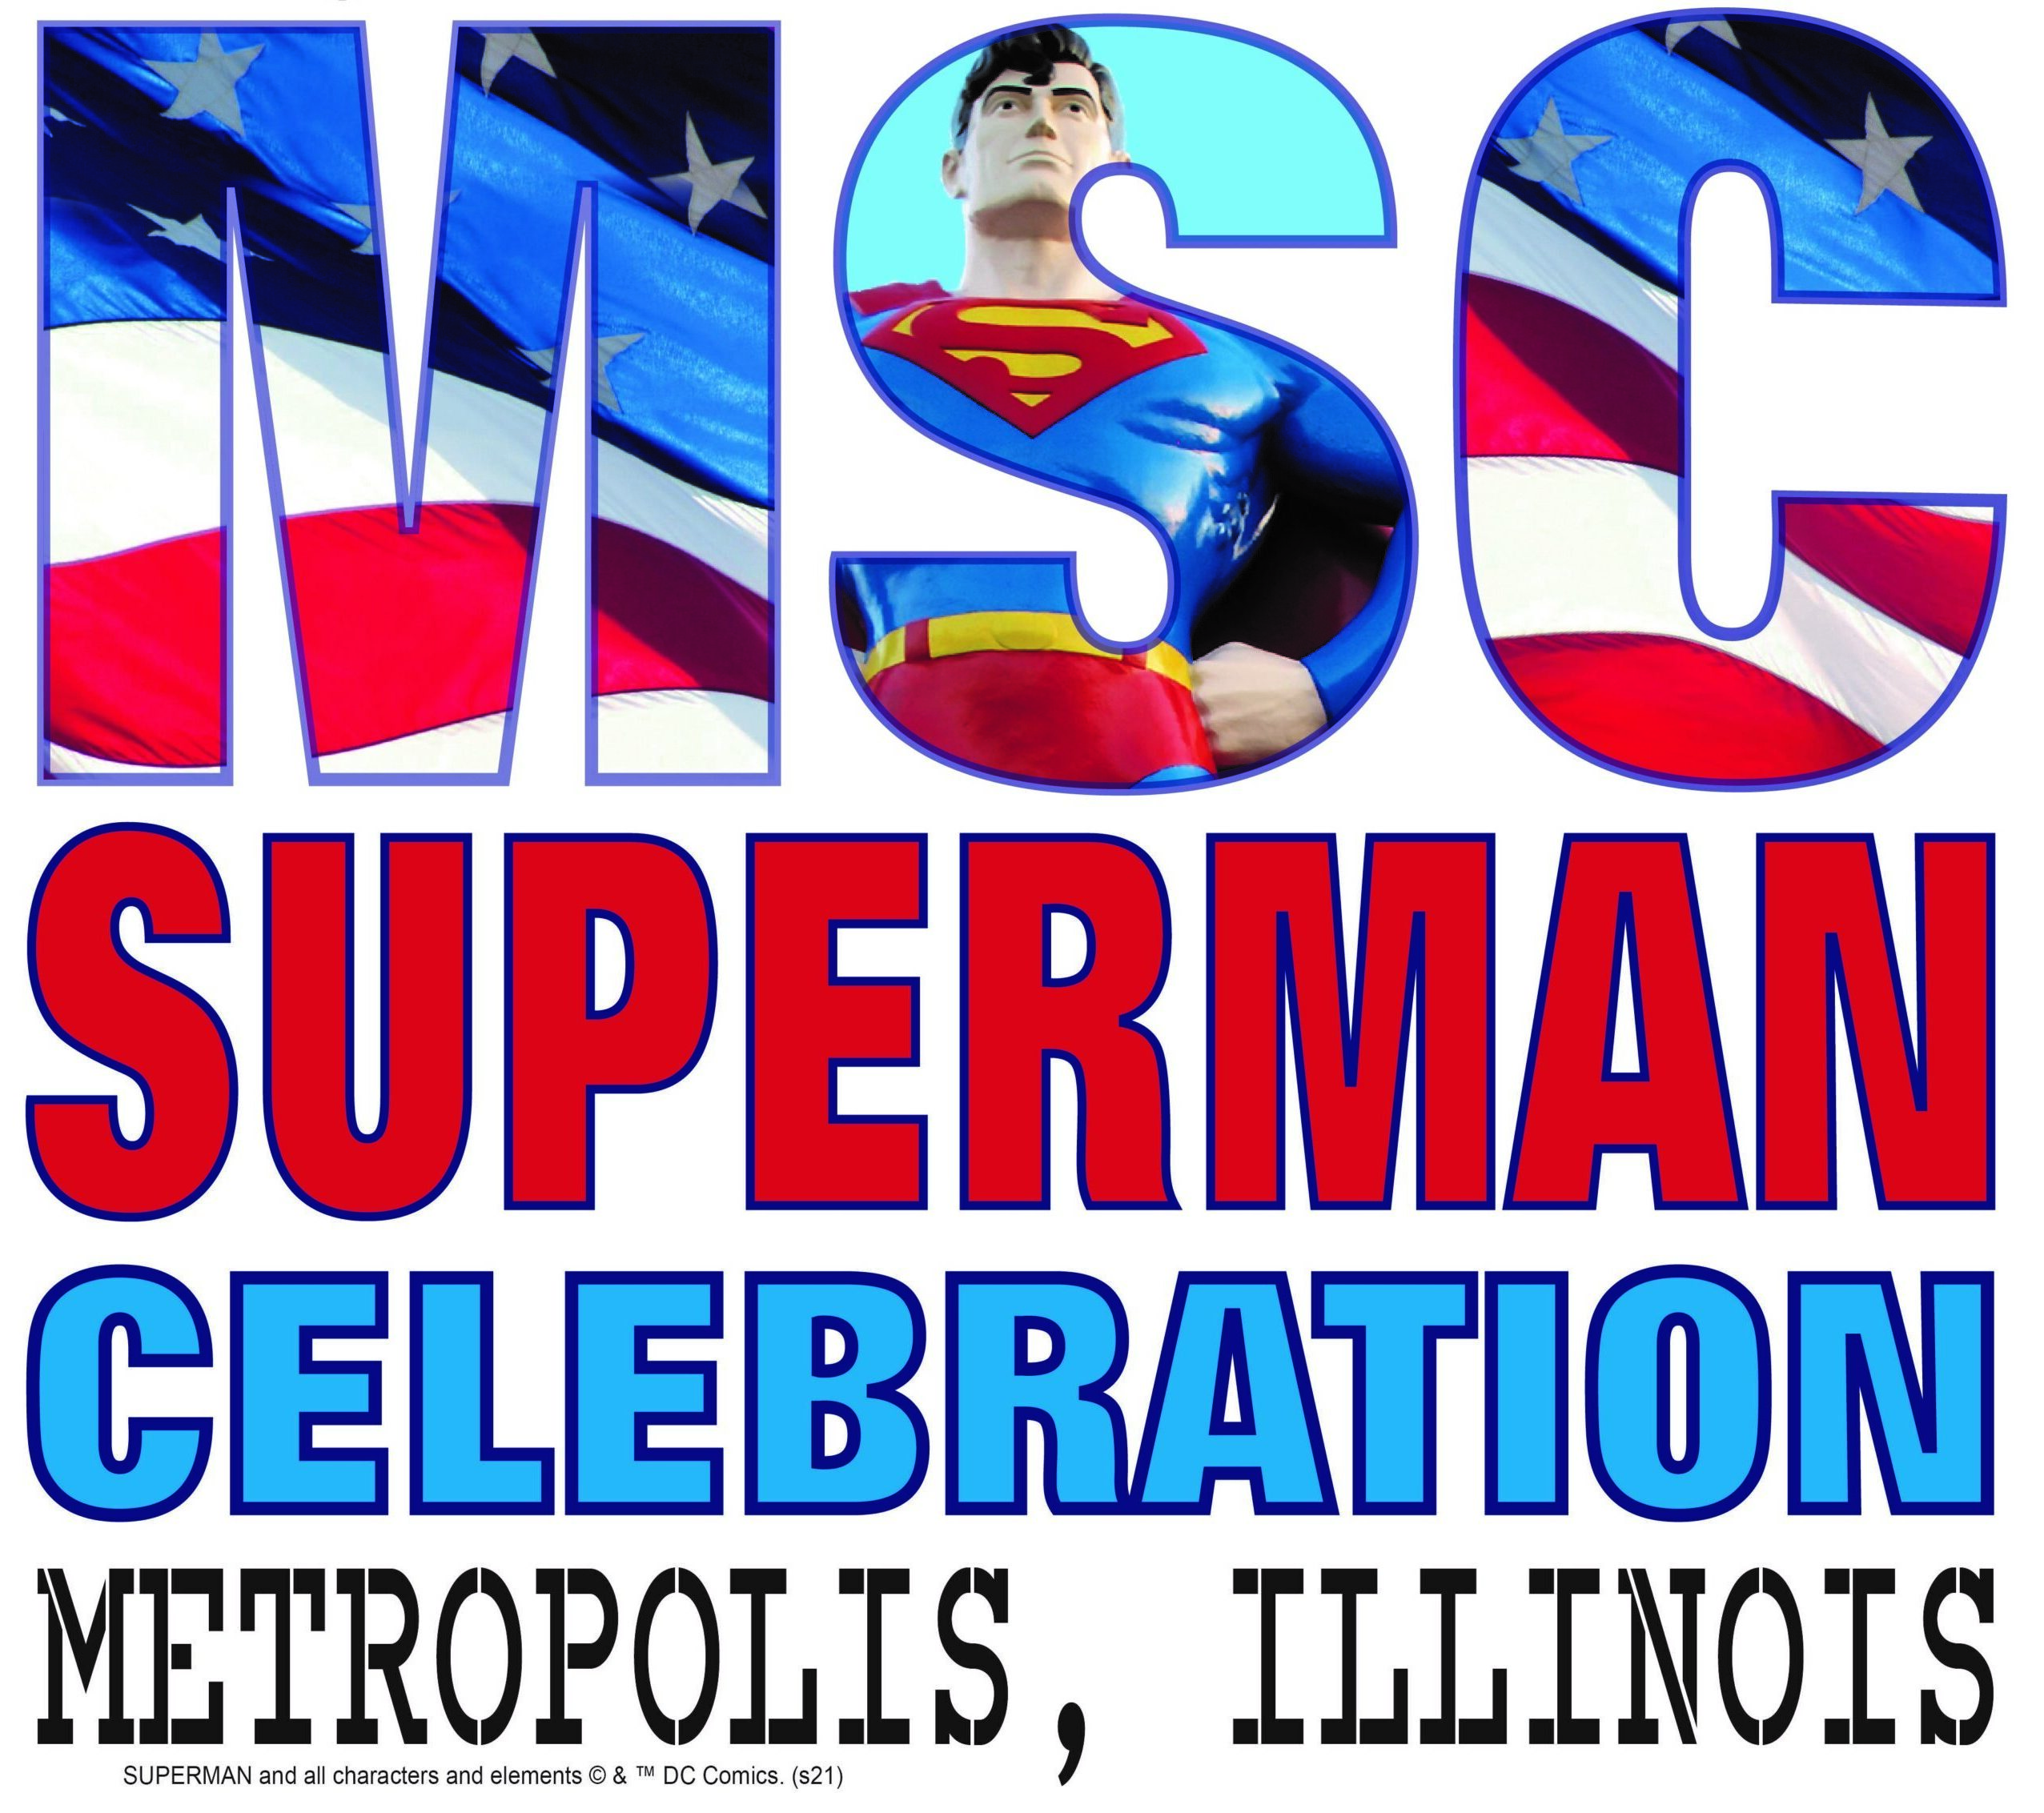 MSC Superman Celebration Metropolis, IL